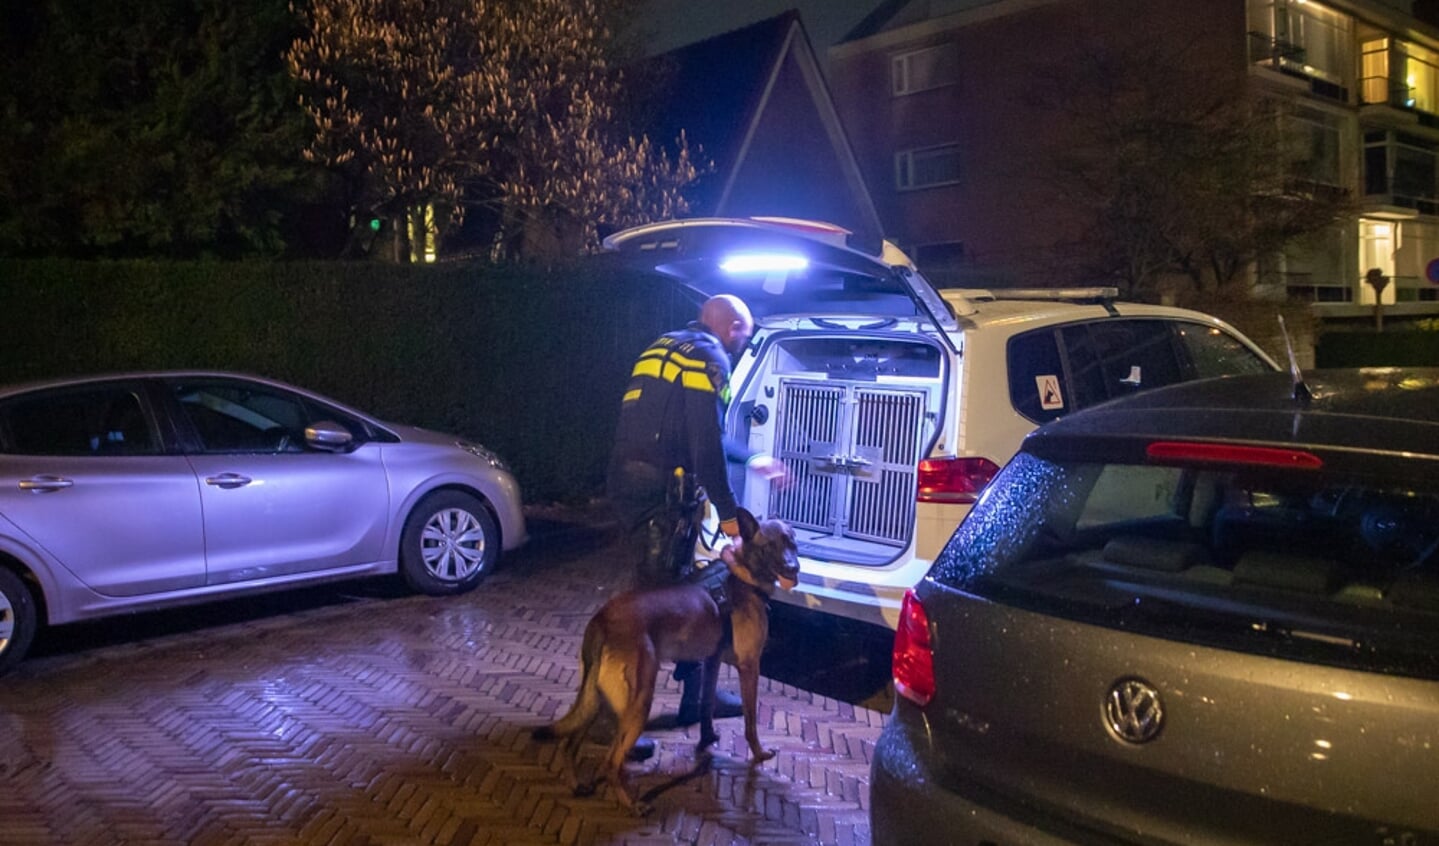 Even na 20.00 uur zocht de politie met veel agenten, waaronder een hondengeleider, in de omgeving van flat Merelhof. 